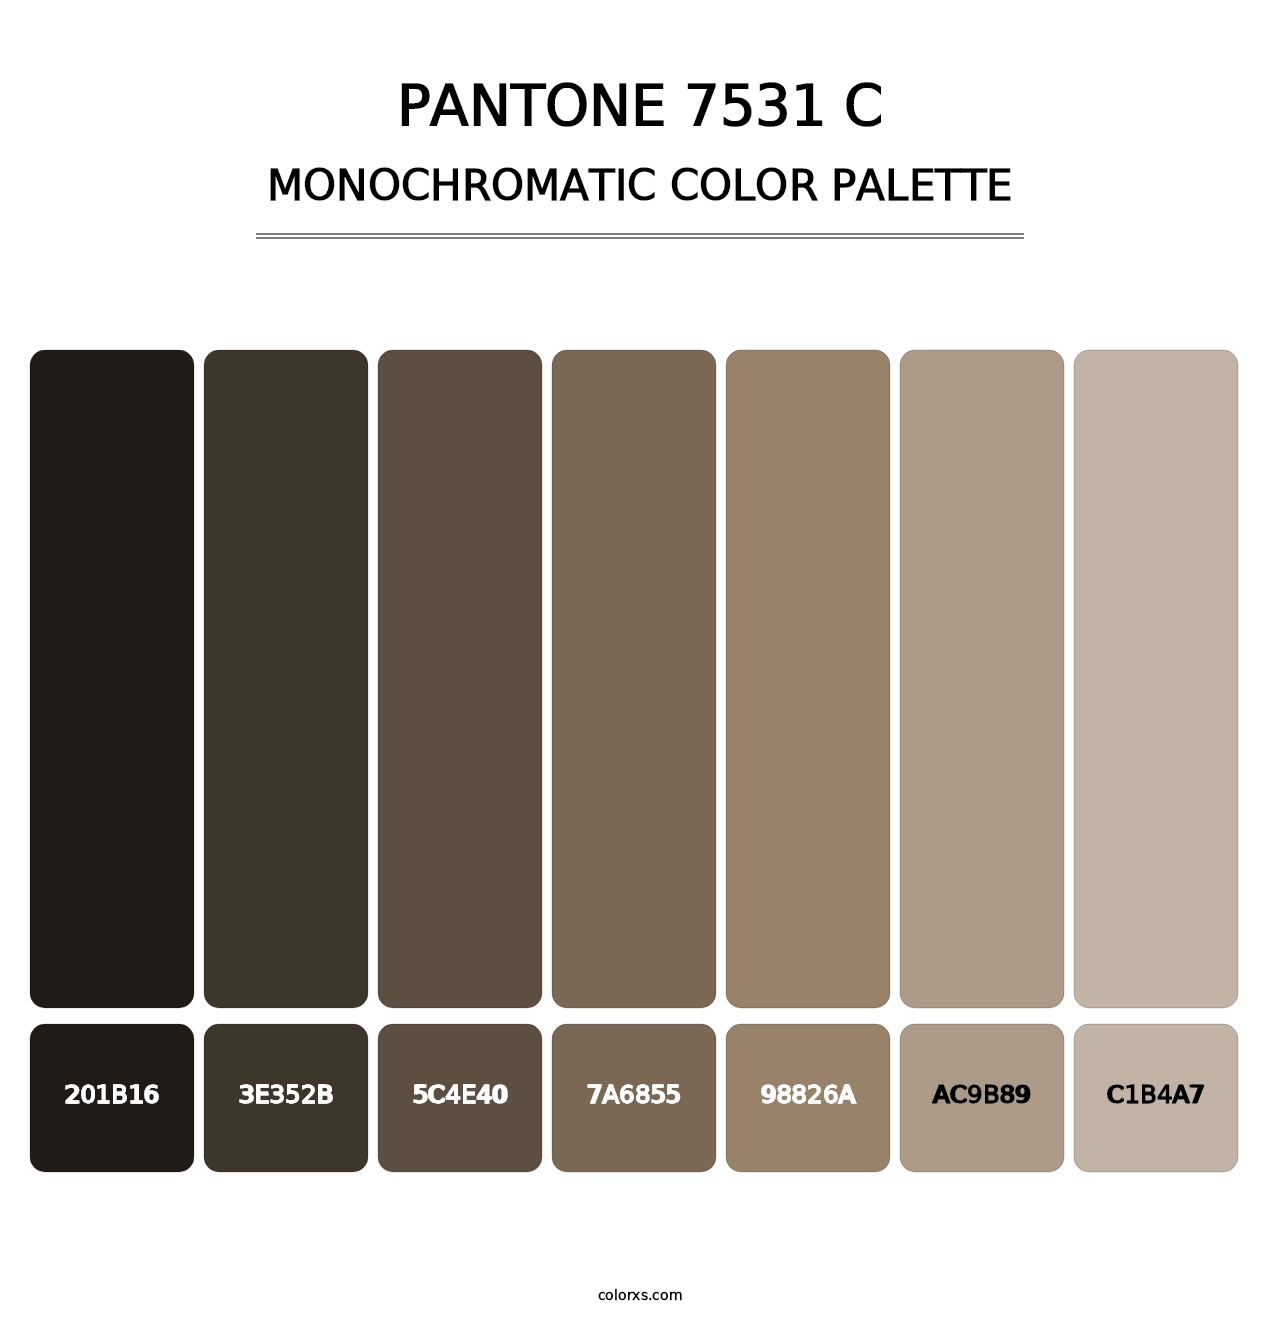 PANTONE 7531 C - Monochromatic Color Palette